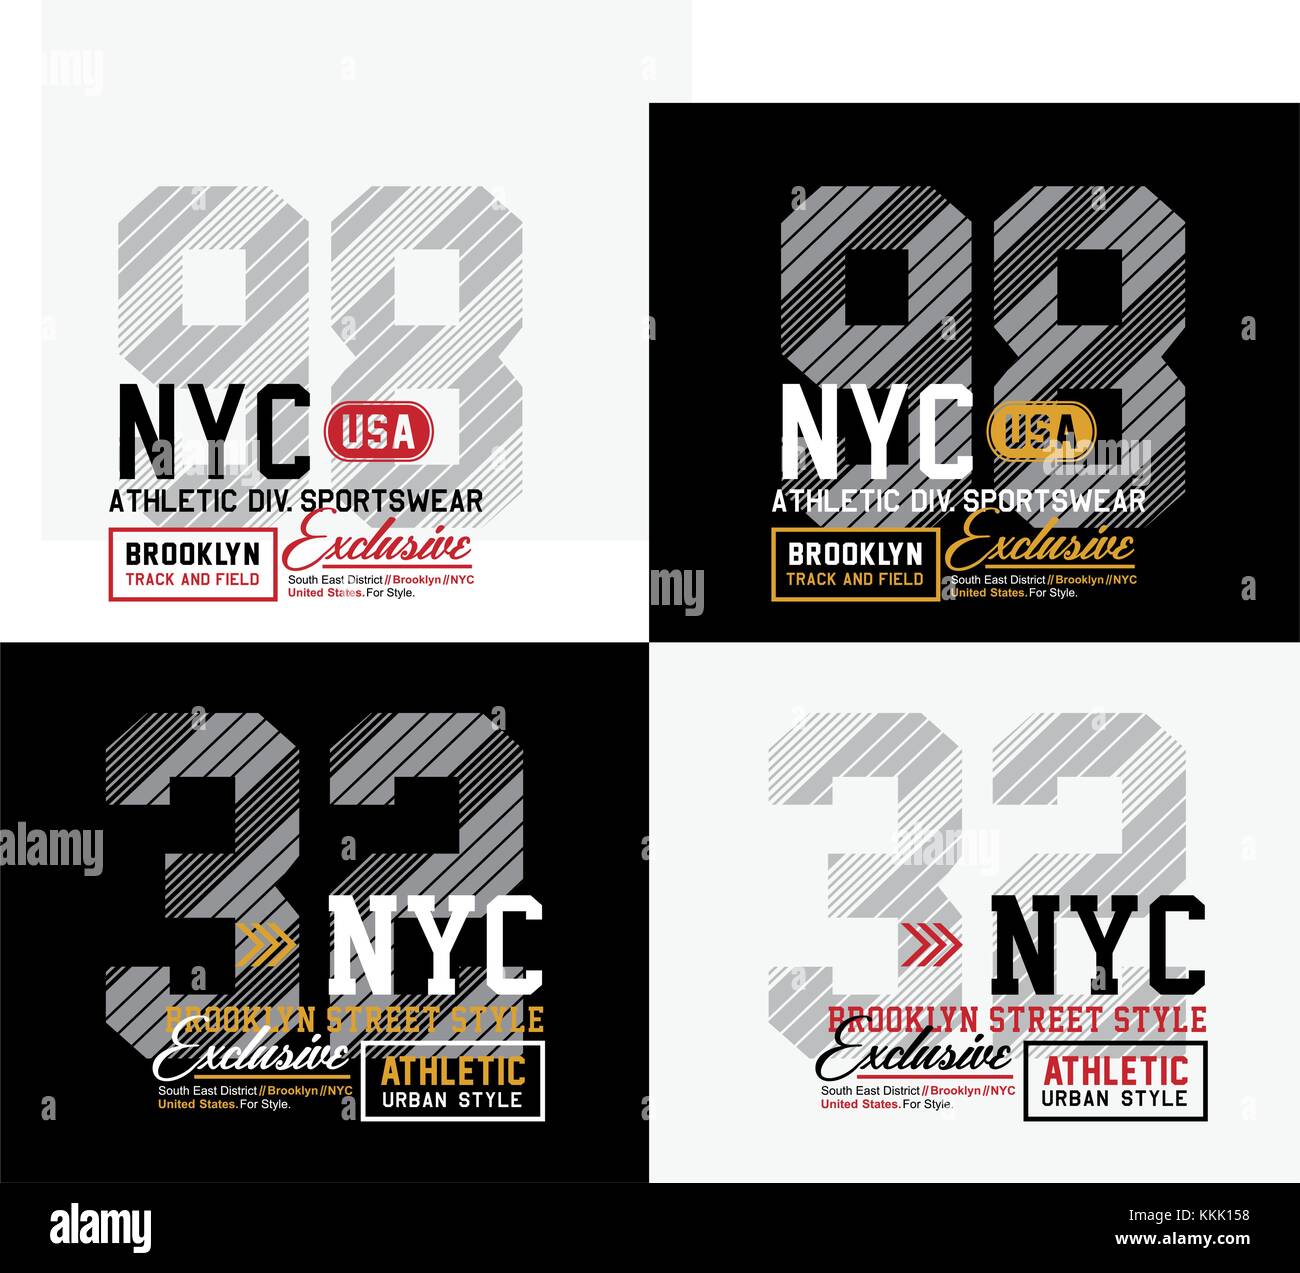 Définir le motif NYC pour l'impression sur les t-shirts, les étiquettes, les affiches et l'itc Illustration de Vecteur